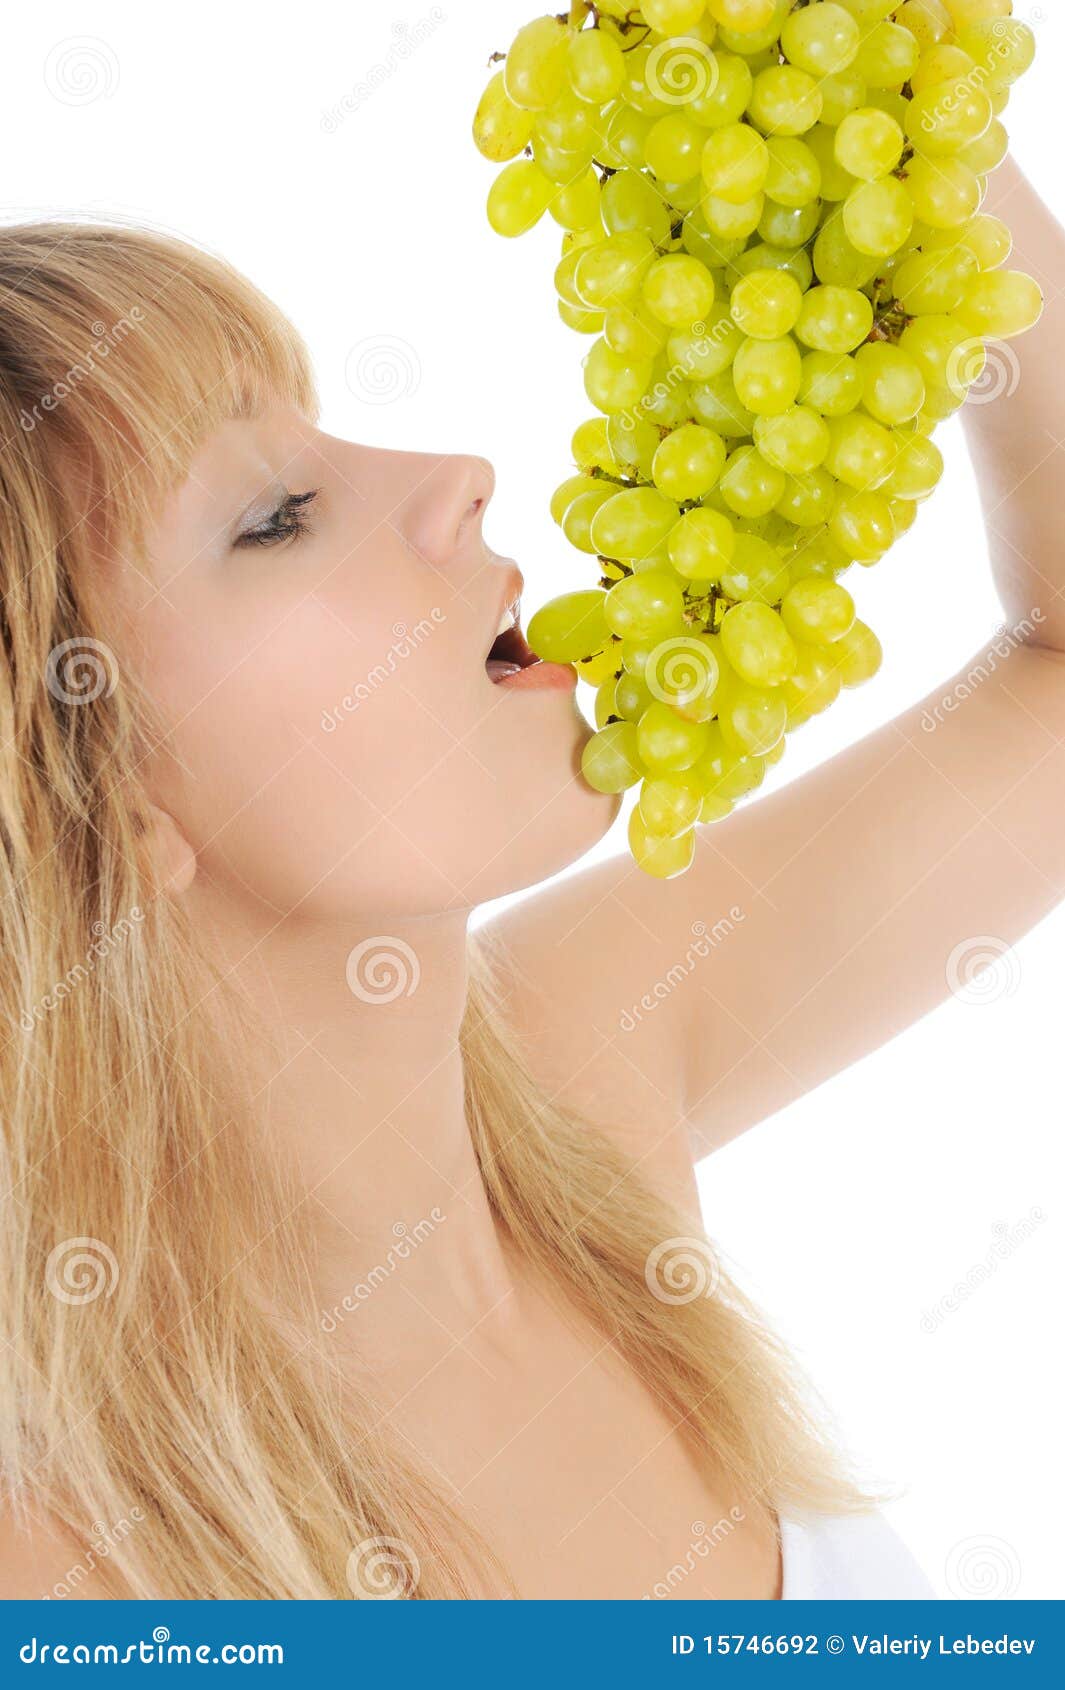 Девушка есть виноград. Девушка ест виноград. Девушка блондинка с виноградом. Кушать виноград. Девушка анфас есть виноград.